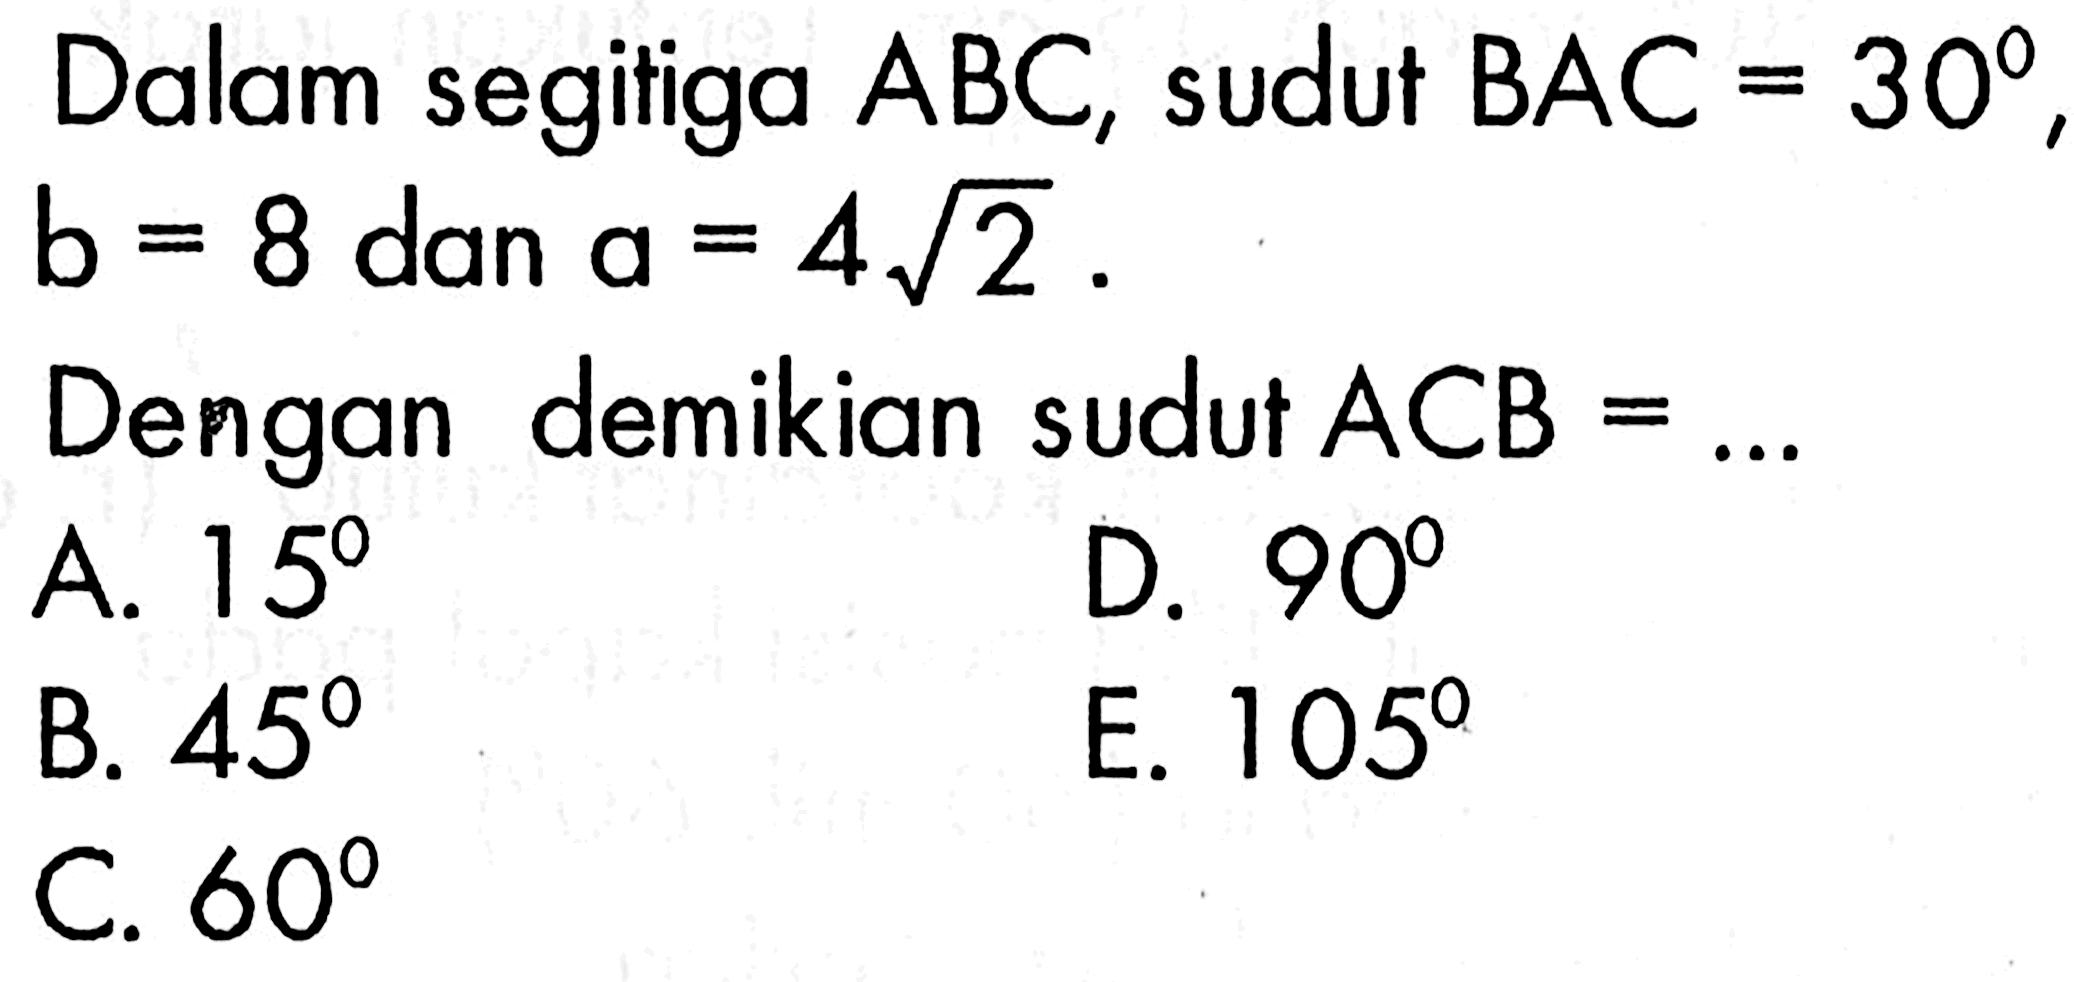 Dalam segitiga ABC, sudut  BAC=30, b=8 dan a=4akar(2).Dengan demikian sudut  ACB= ...